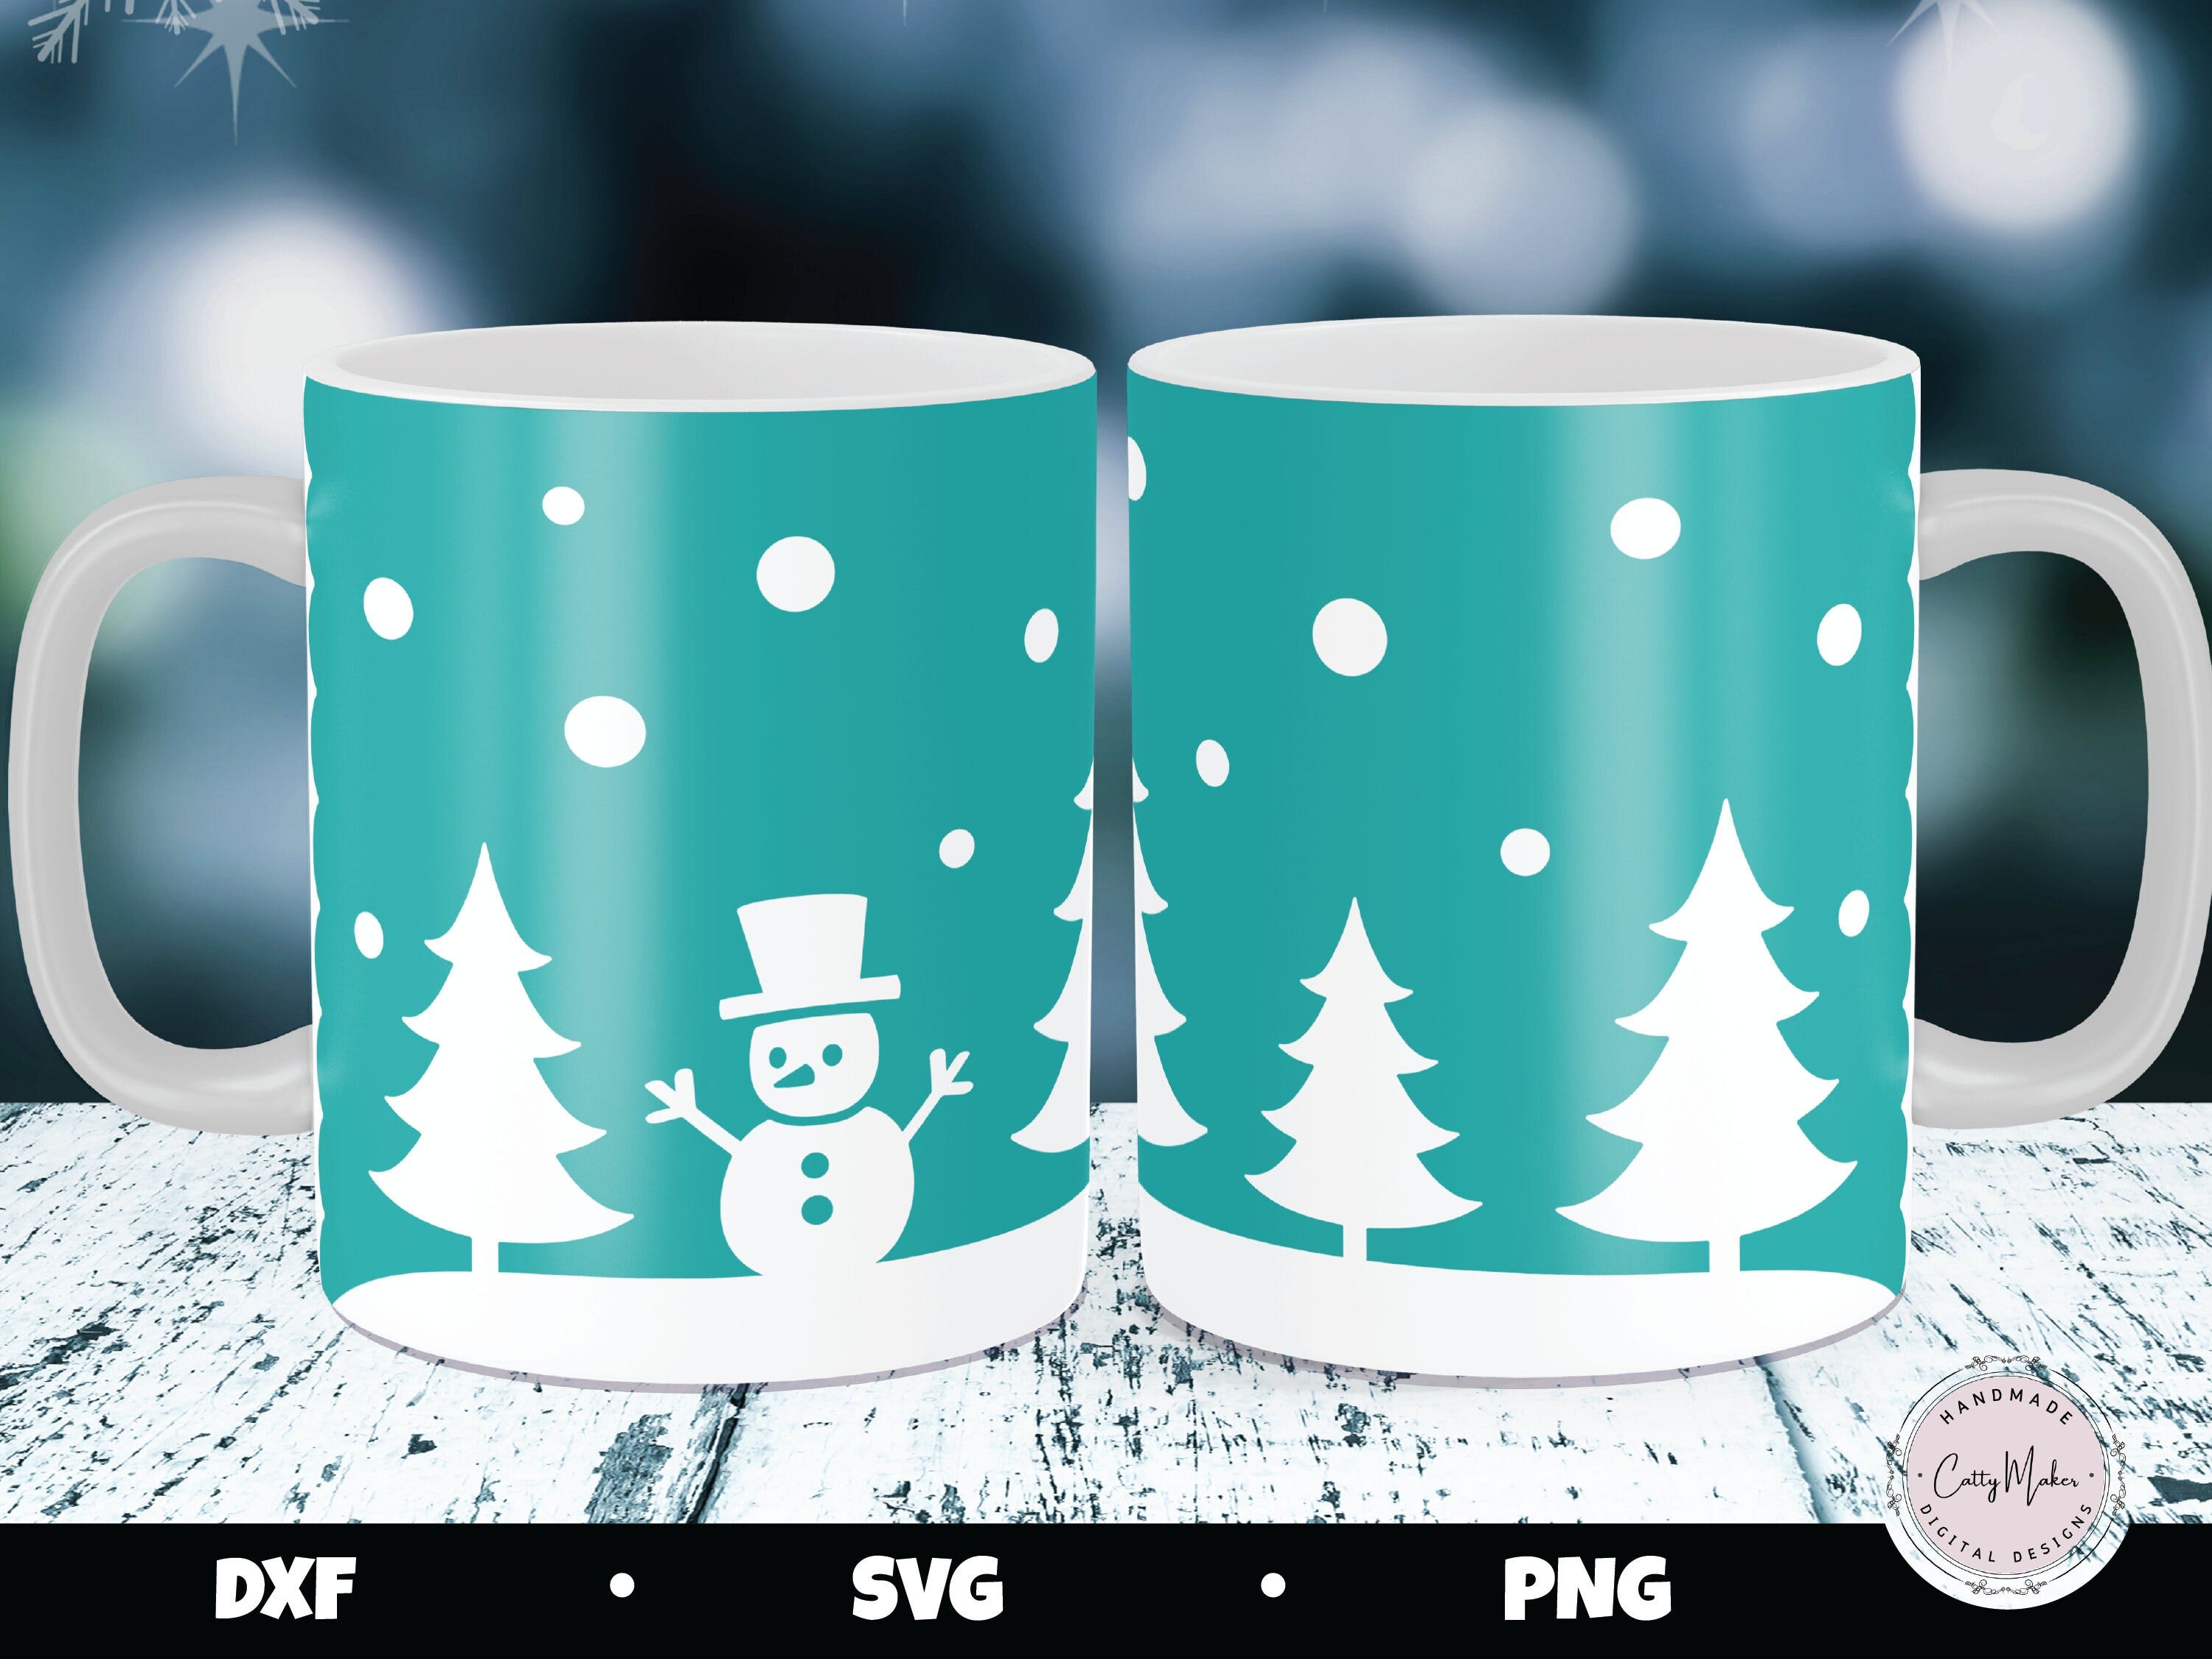 Snowman Mug Press, Christmas Mug, Cricut Mug Press SVG, Holiday Mug, Forest Scene, Christmas Mug svg, Mug Press Template, Mug Sublimation